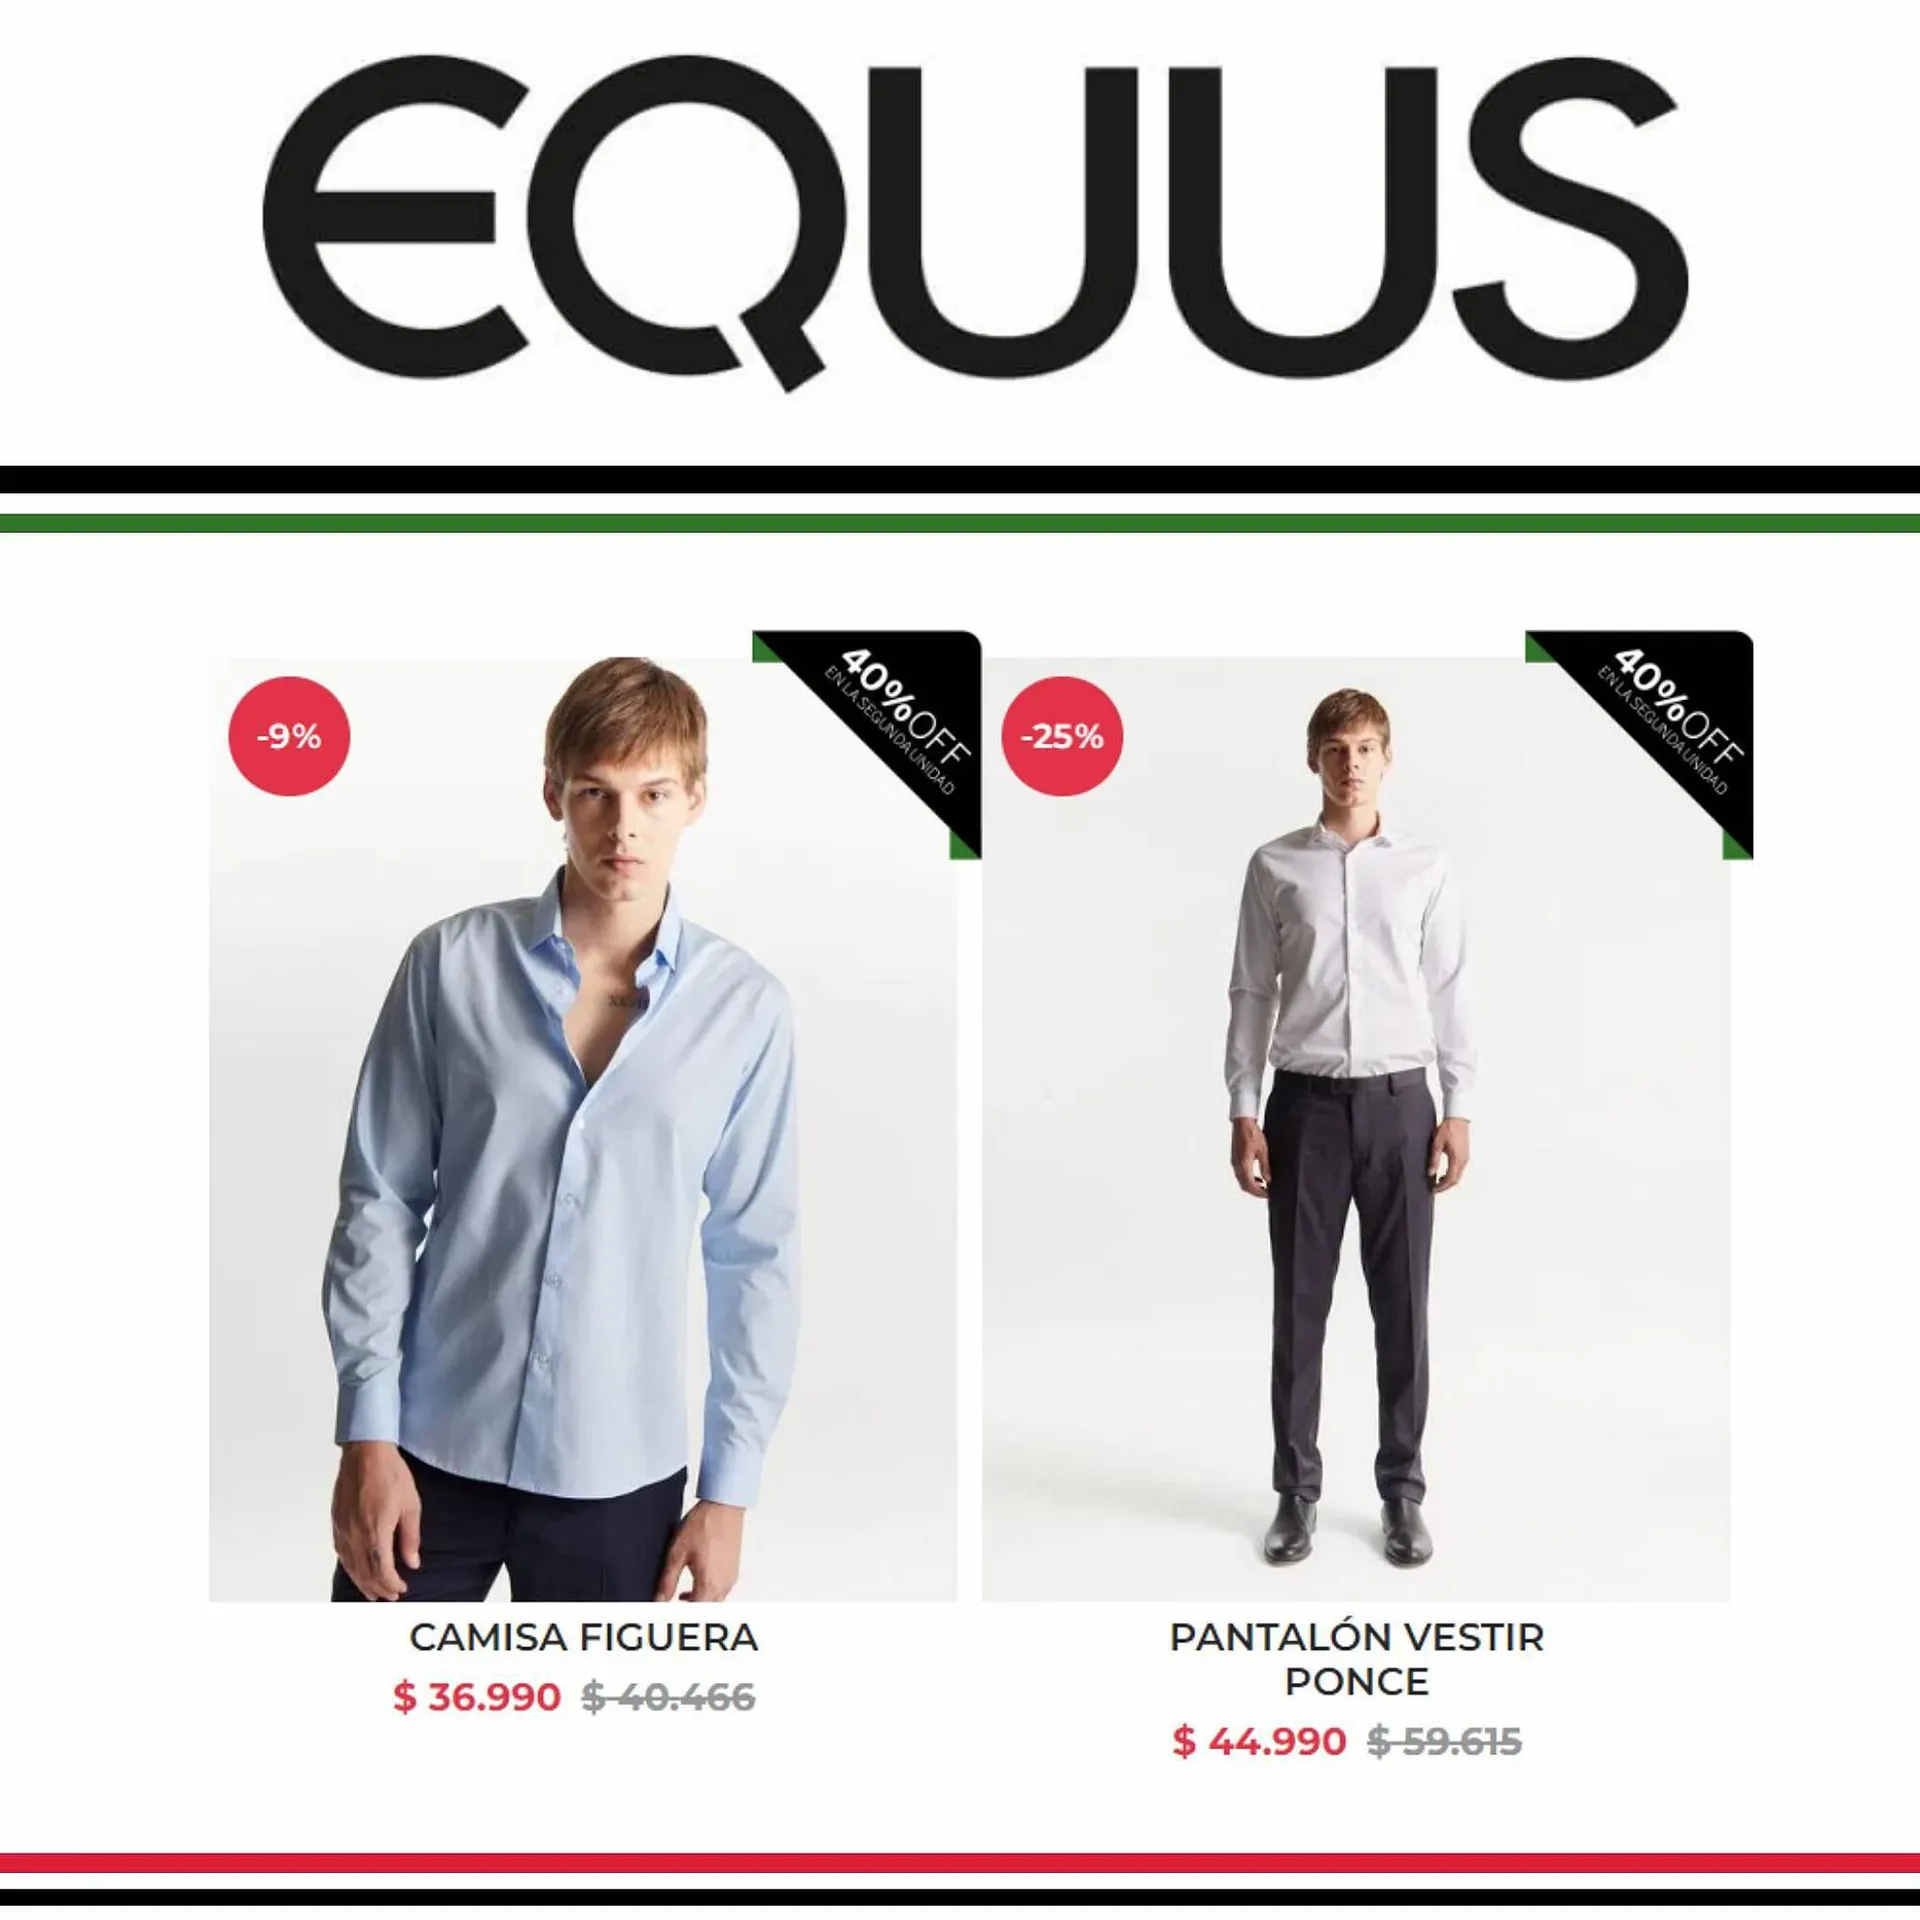 Catálogo Equus - 1